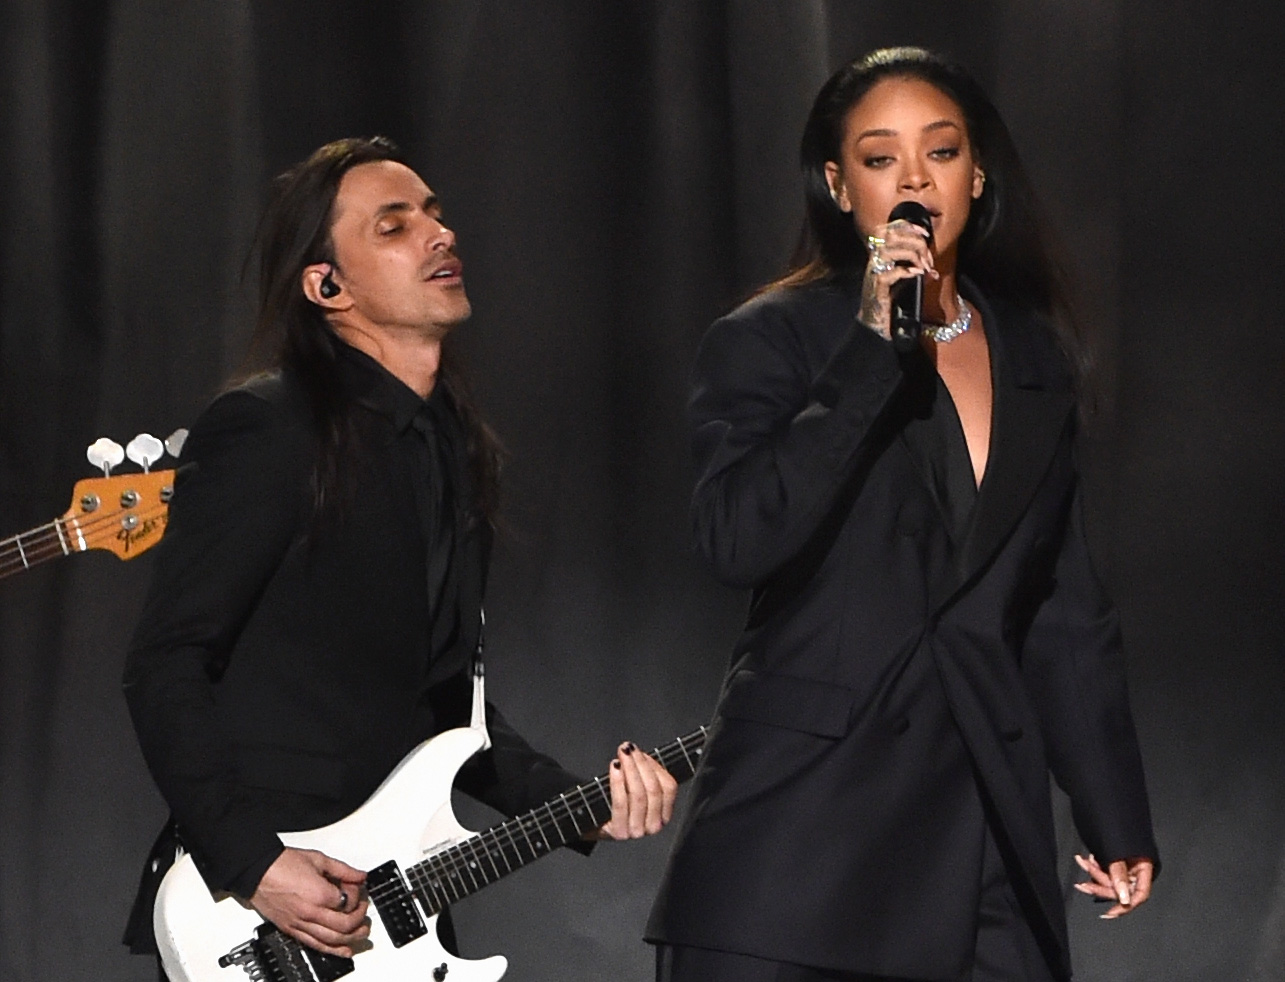 Nuno Bettencourt y Rihanna actúan en el escenario durante los Premios Grammy 2015. Foto de Getty Images